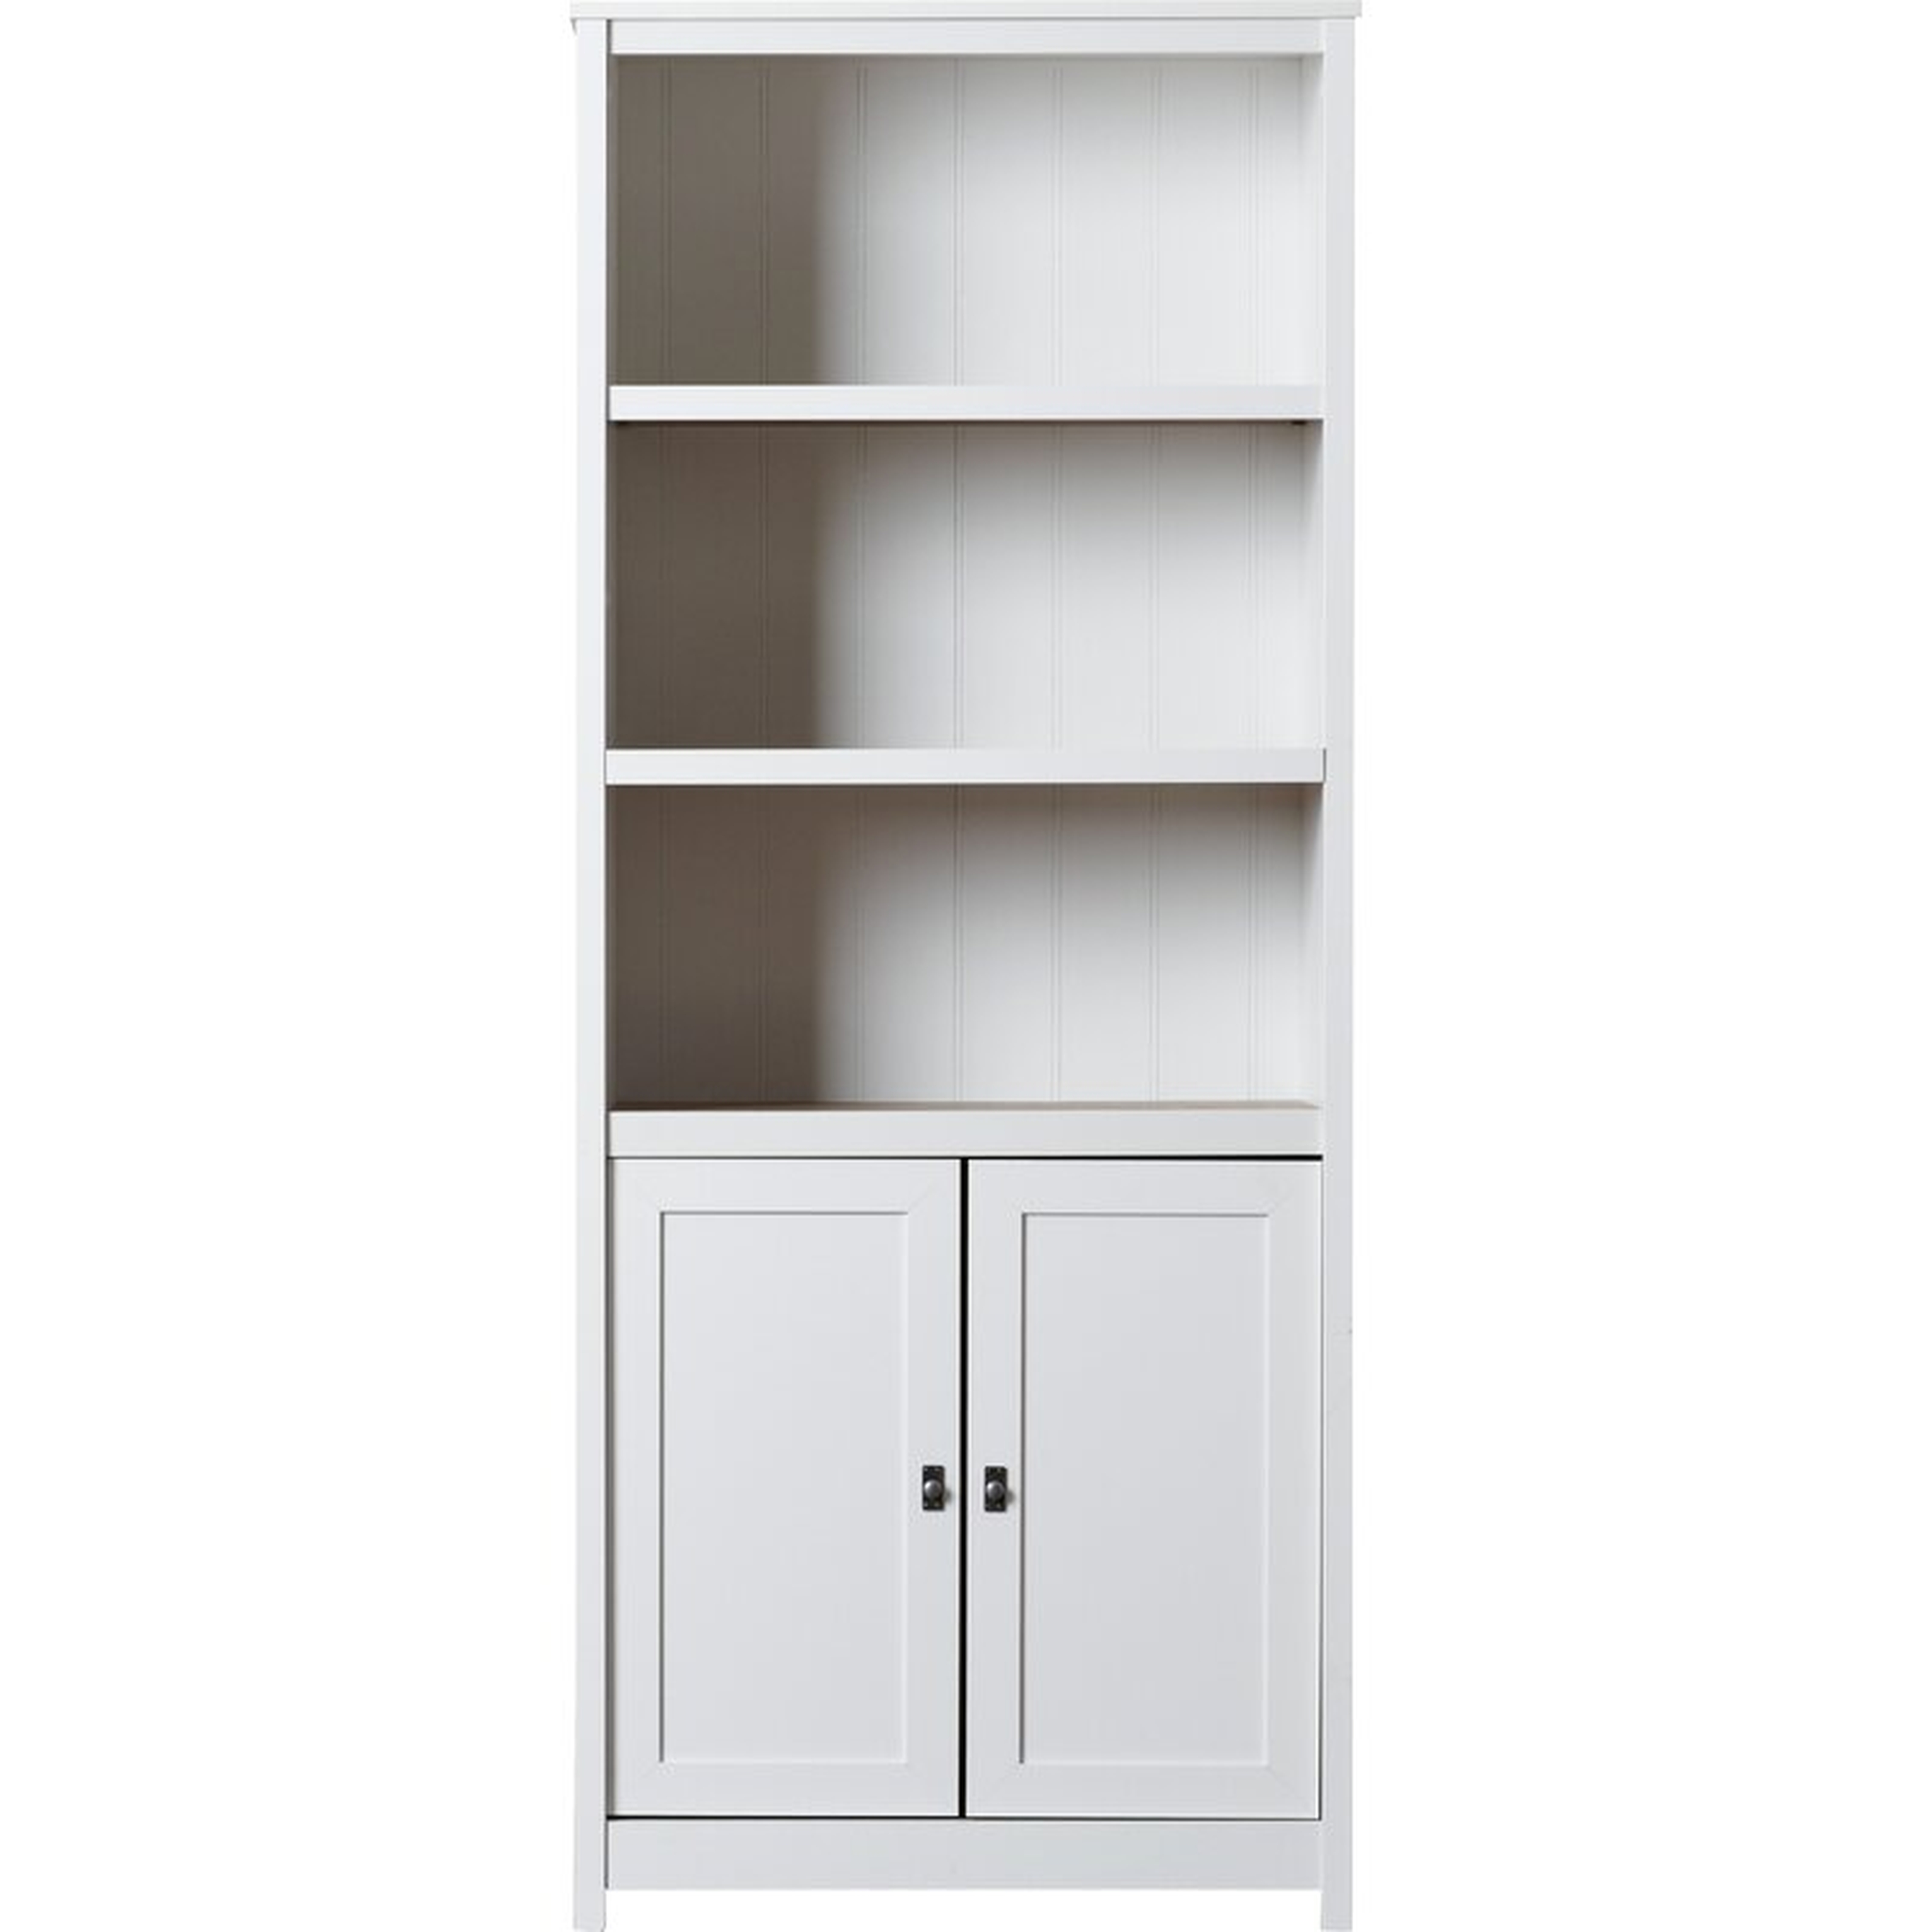 Myrasol Standard Bookcase, White - Wayfair